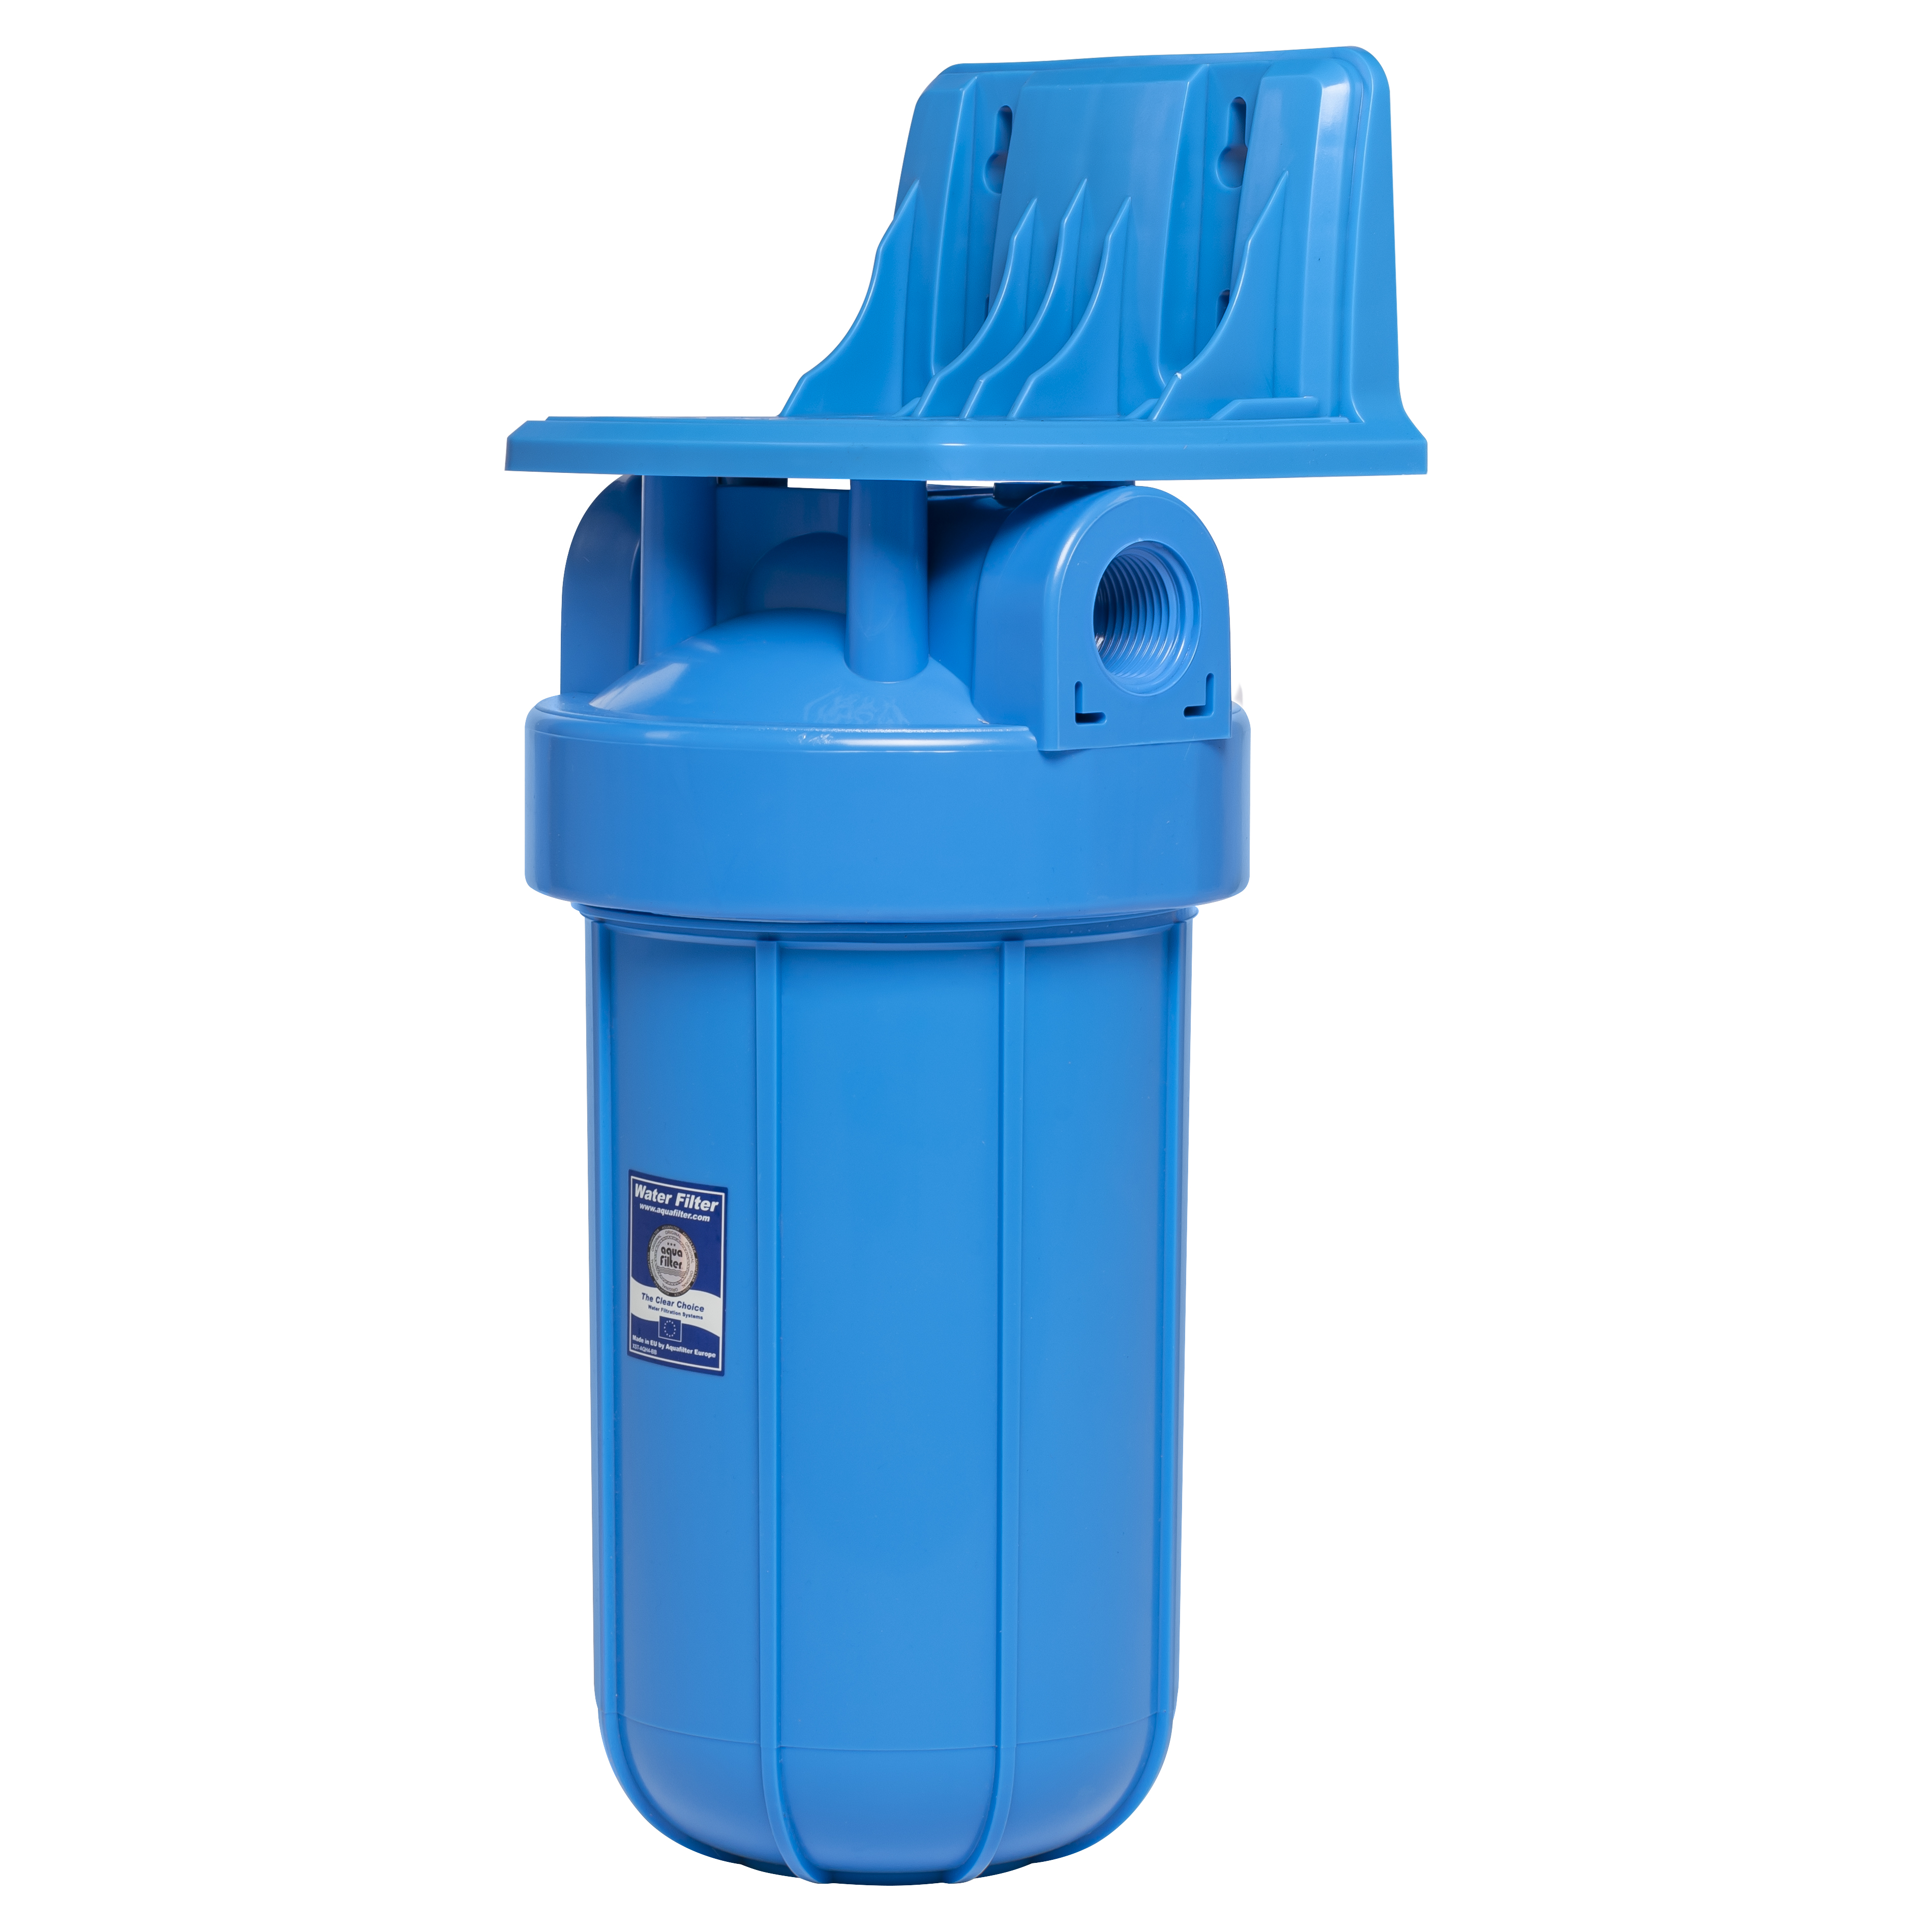 Фильтр-колба Aquafilter для воды Aquafilter FH10B1-WB